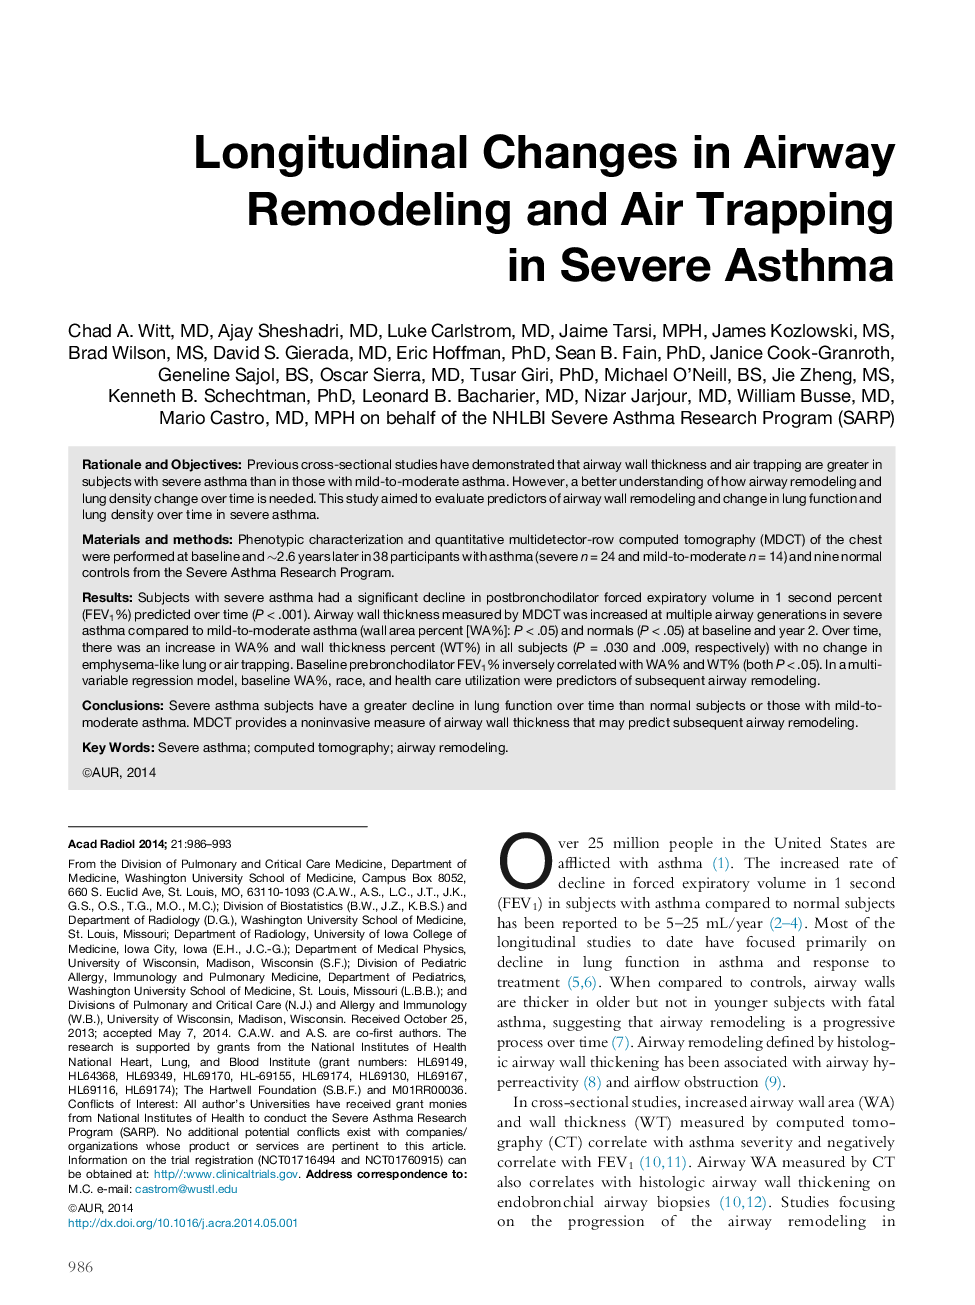 تغییرات طولی در ترمیم مجدد راه هوایی و تله هوا در آسم شدید 